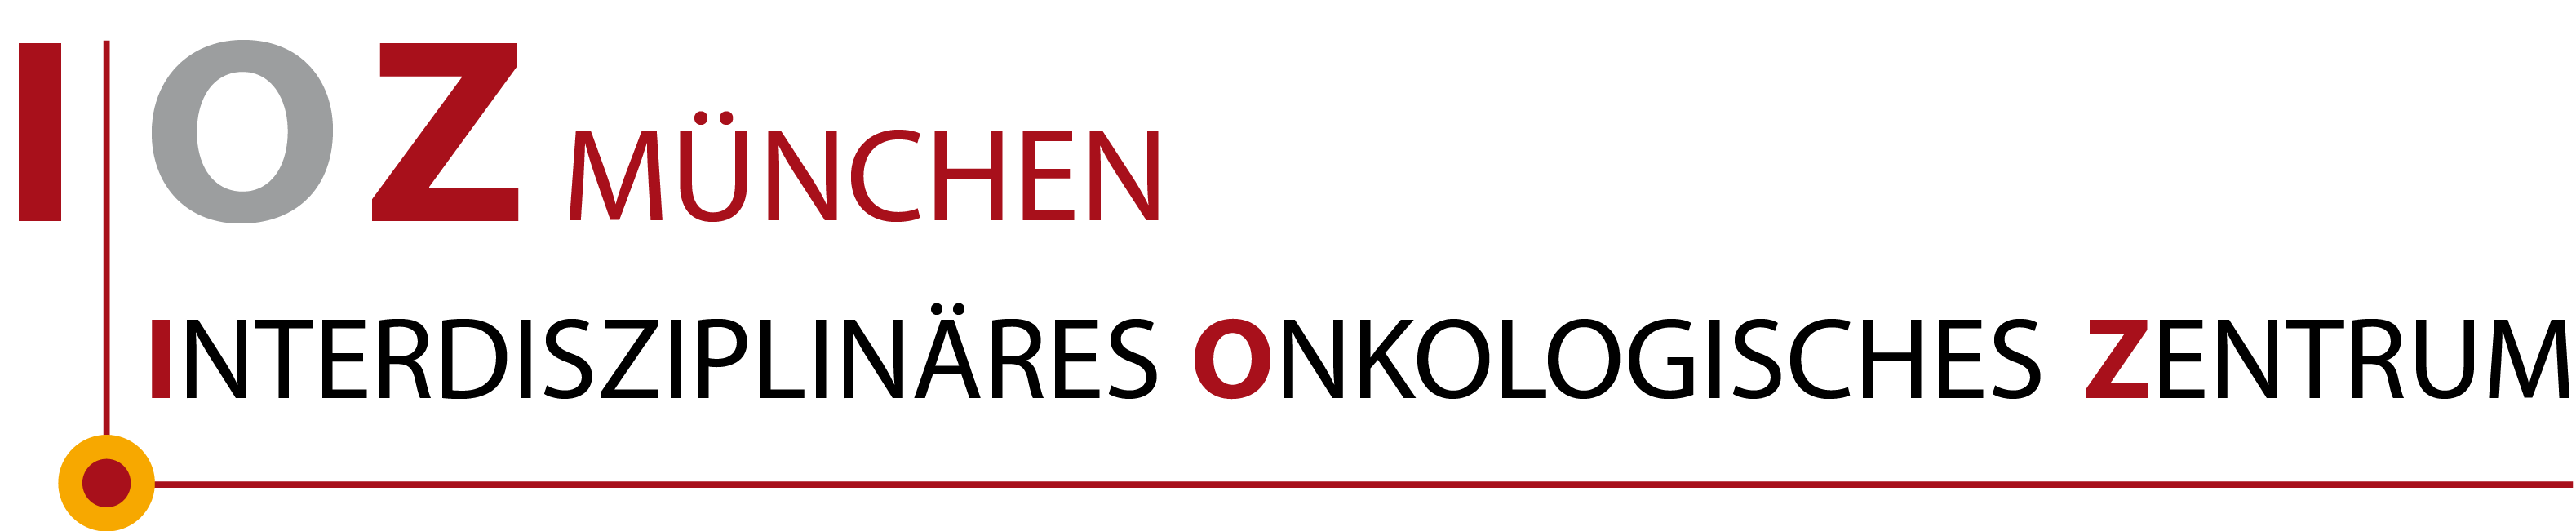 Logo IOZ München